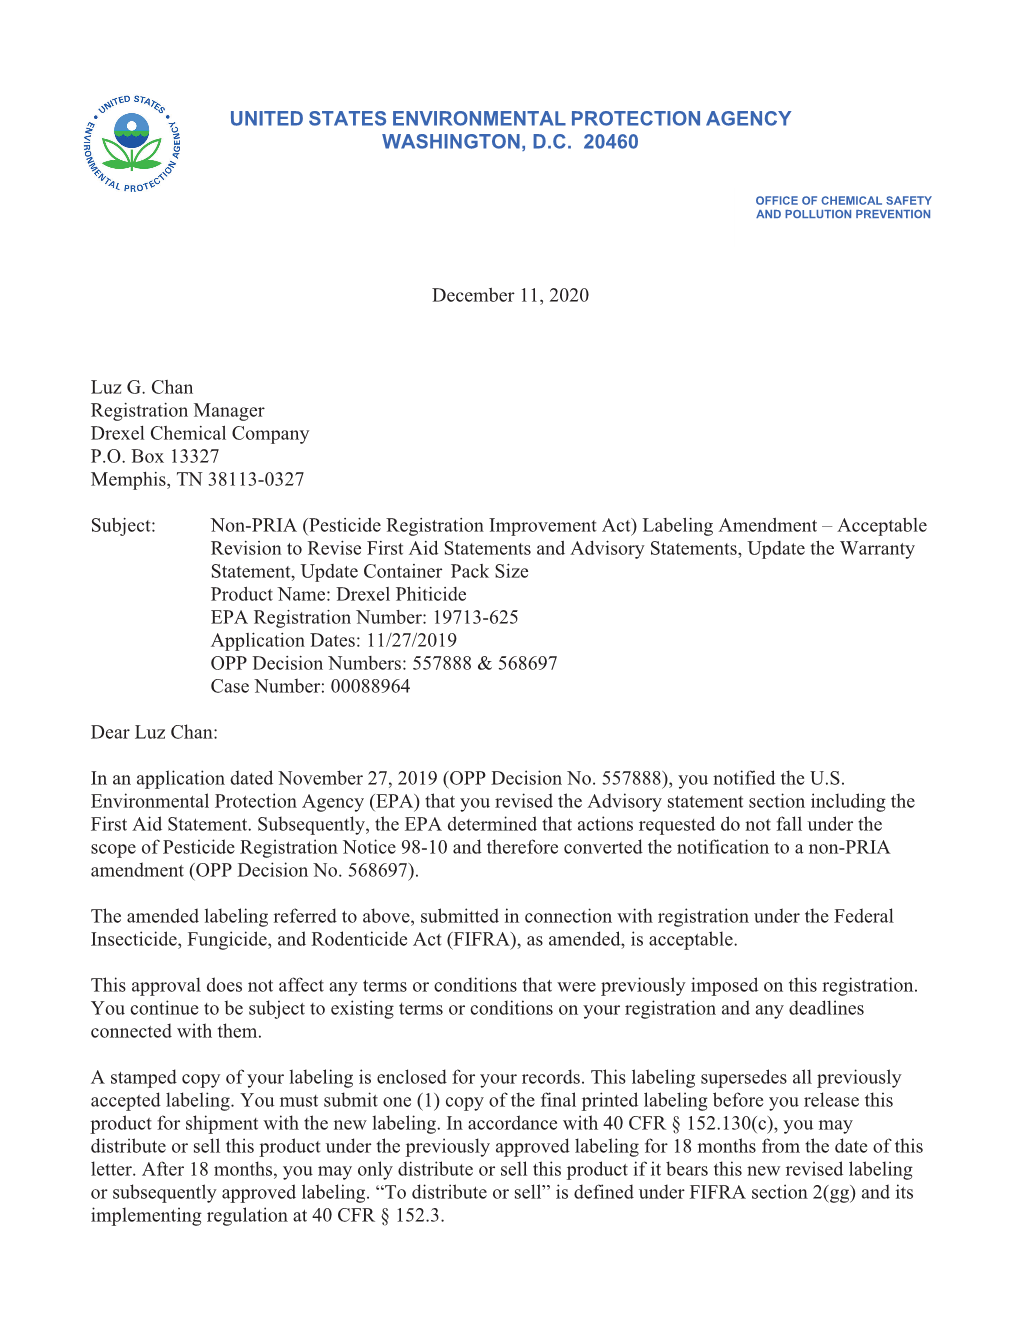 US EPA, Pesticide Product Label, DREXEL PHITICIDE,12/11/2020